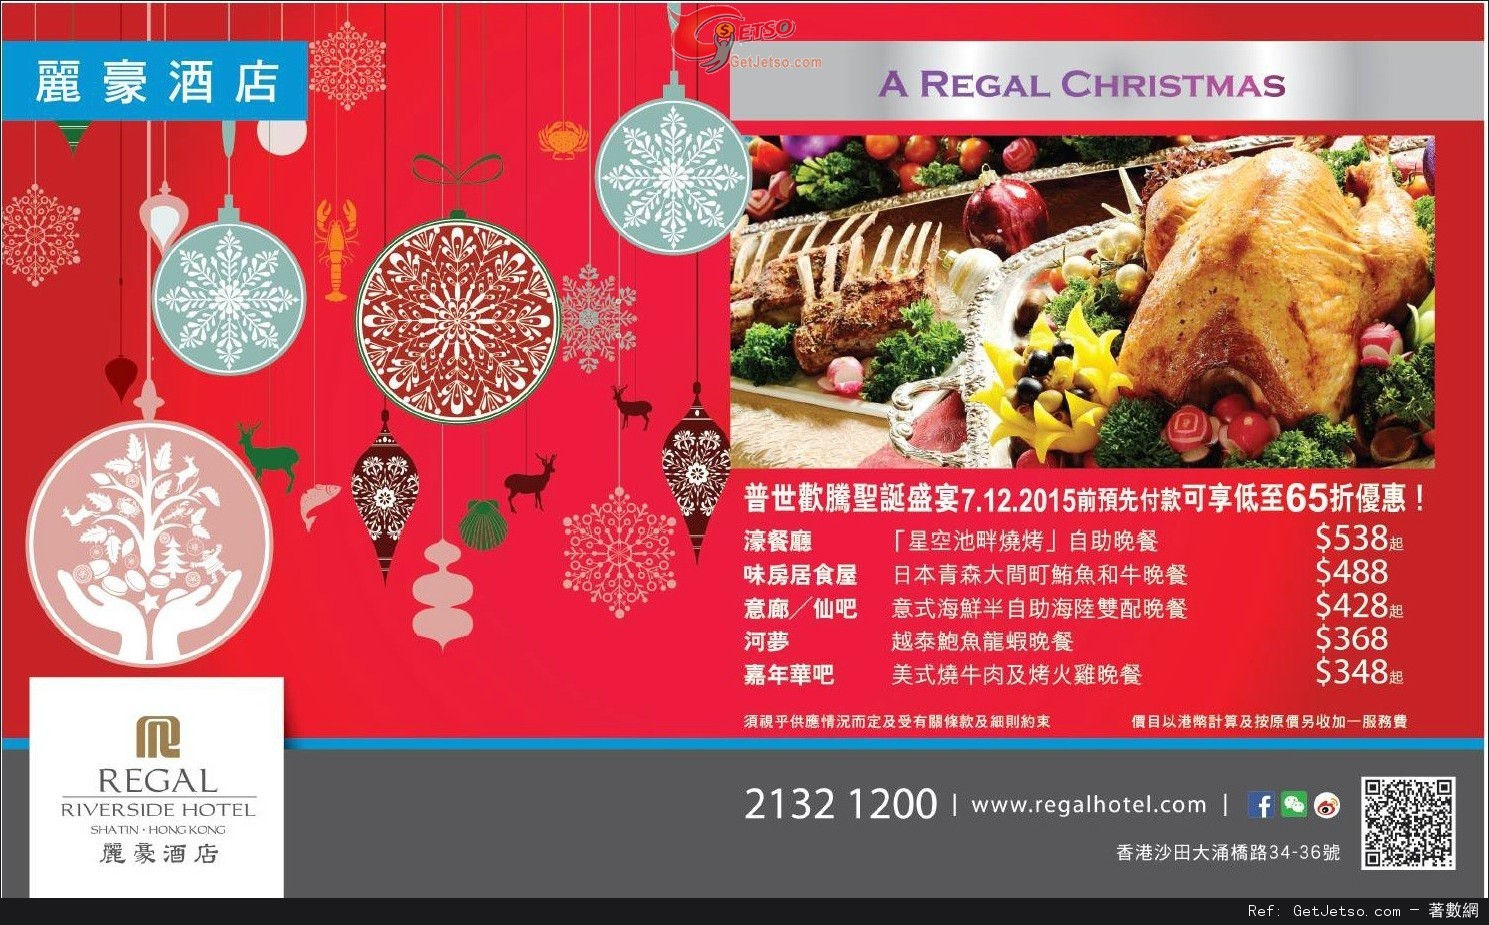 沙田麗豪酒店聖誕自助餐低至65折預訂優惠(至15年12月7日)圖片1